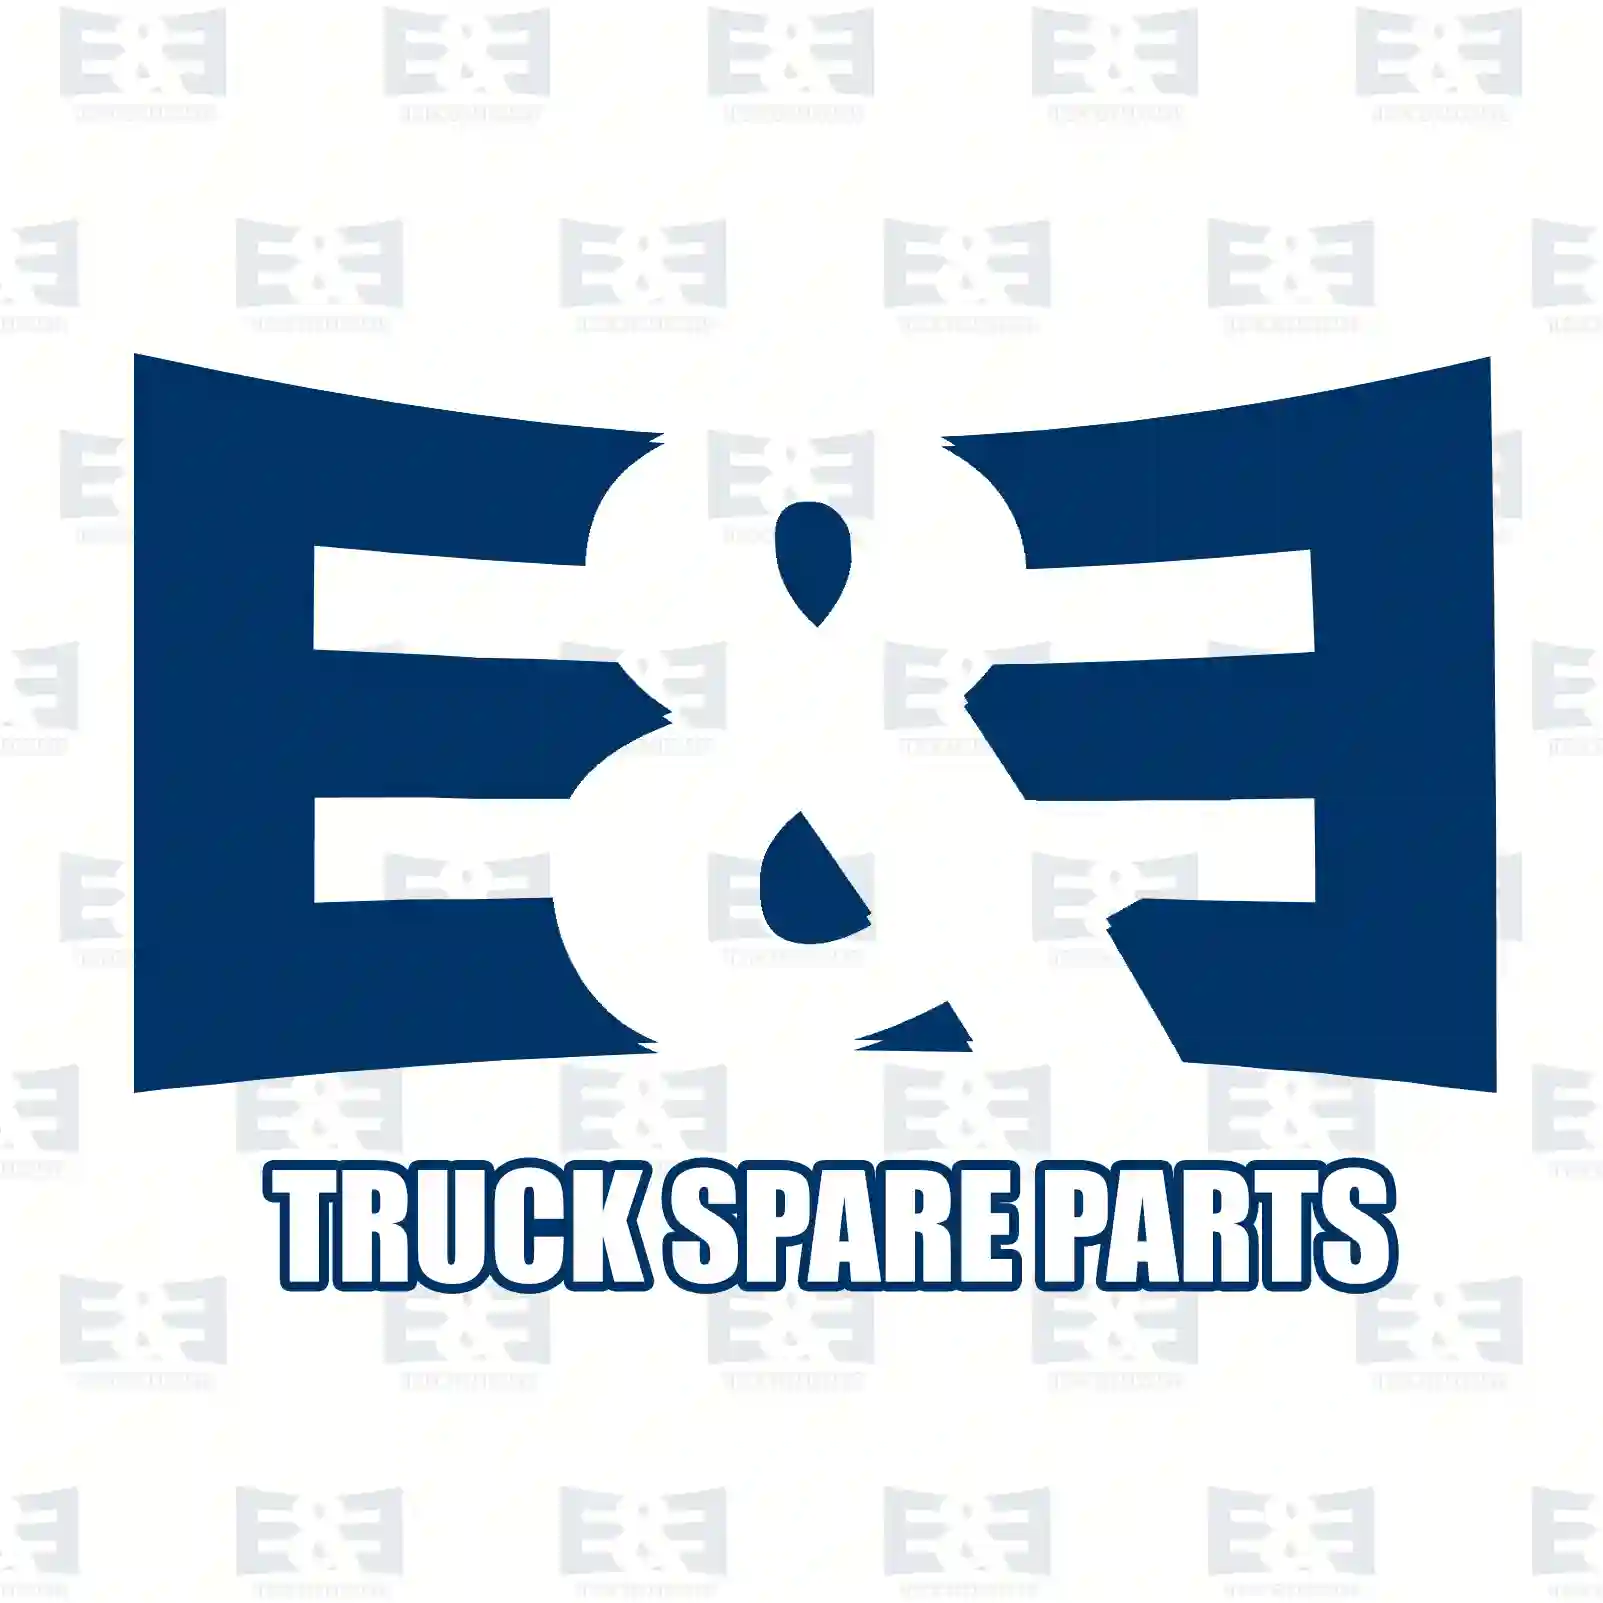 King pin kit, 2E2279085, 9723320106S1, ZG41277-0008, ||  2E2279085 E&E Truck Spare Parts | Truck Spare Parts, Auotomotive Spare Parts King pin kit, 2E2279085, 9723320106S1, ZG41277-0008, ||  2E2279085 E&E Truck Spare Parts | Truck Spare Parts, Auotomotive Spare Parts